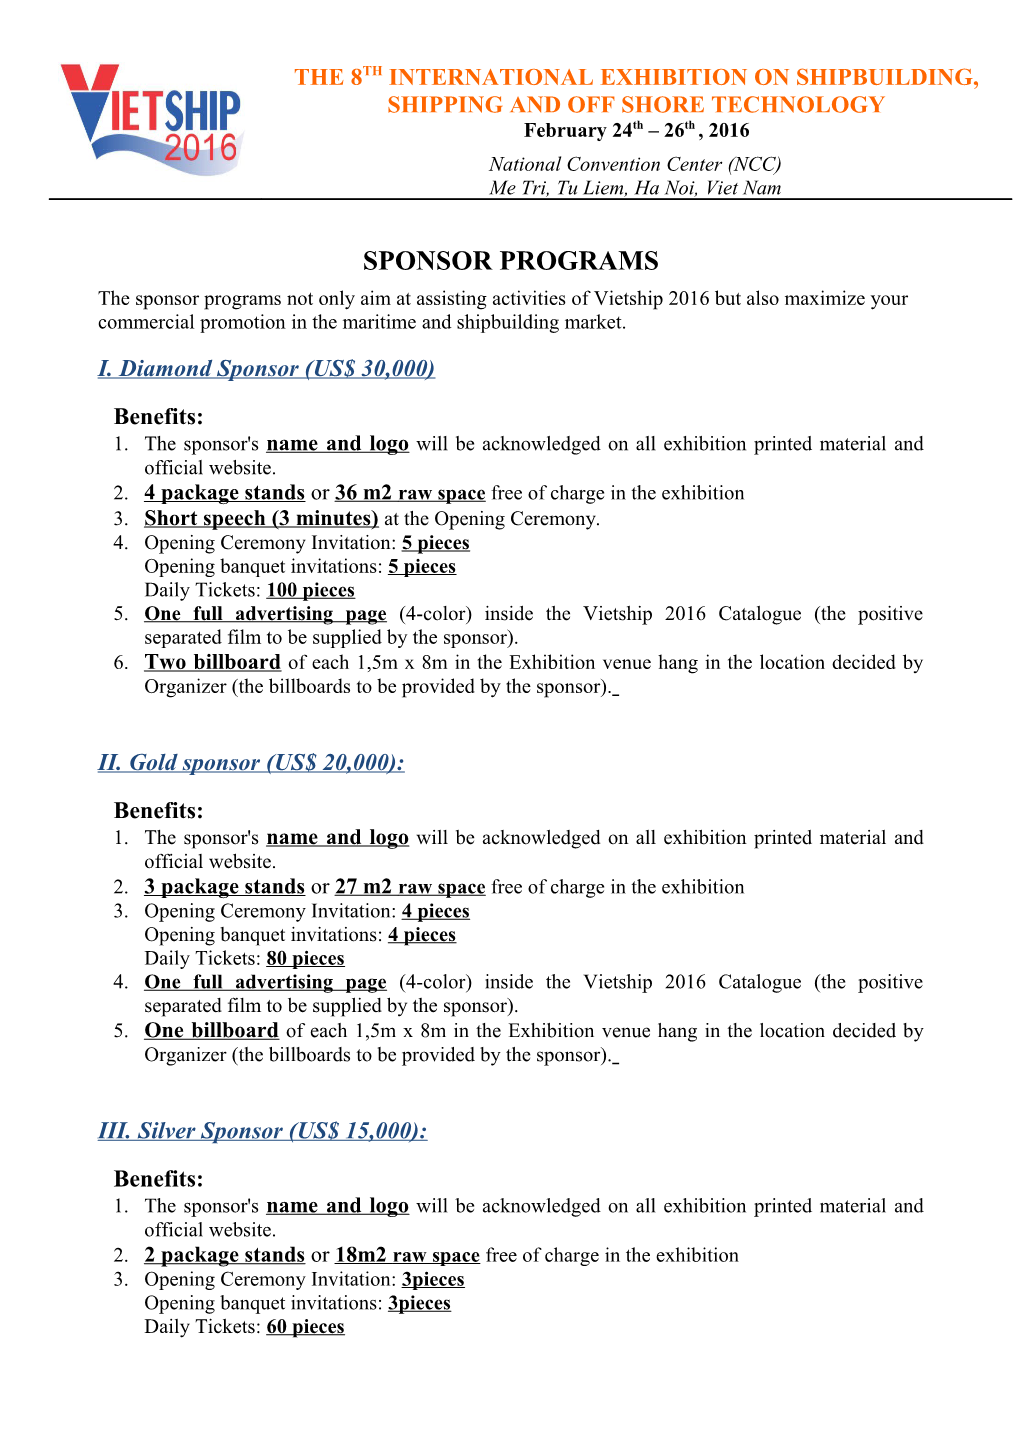 Sponsor Programs